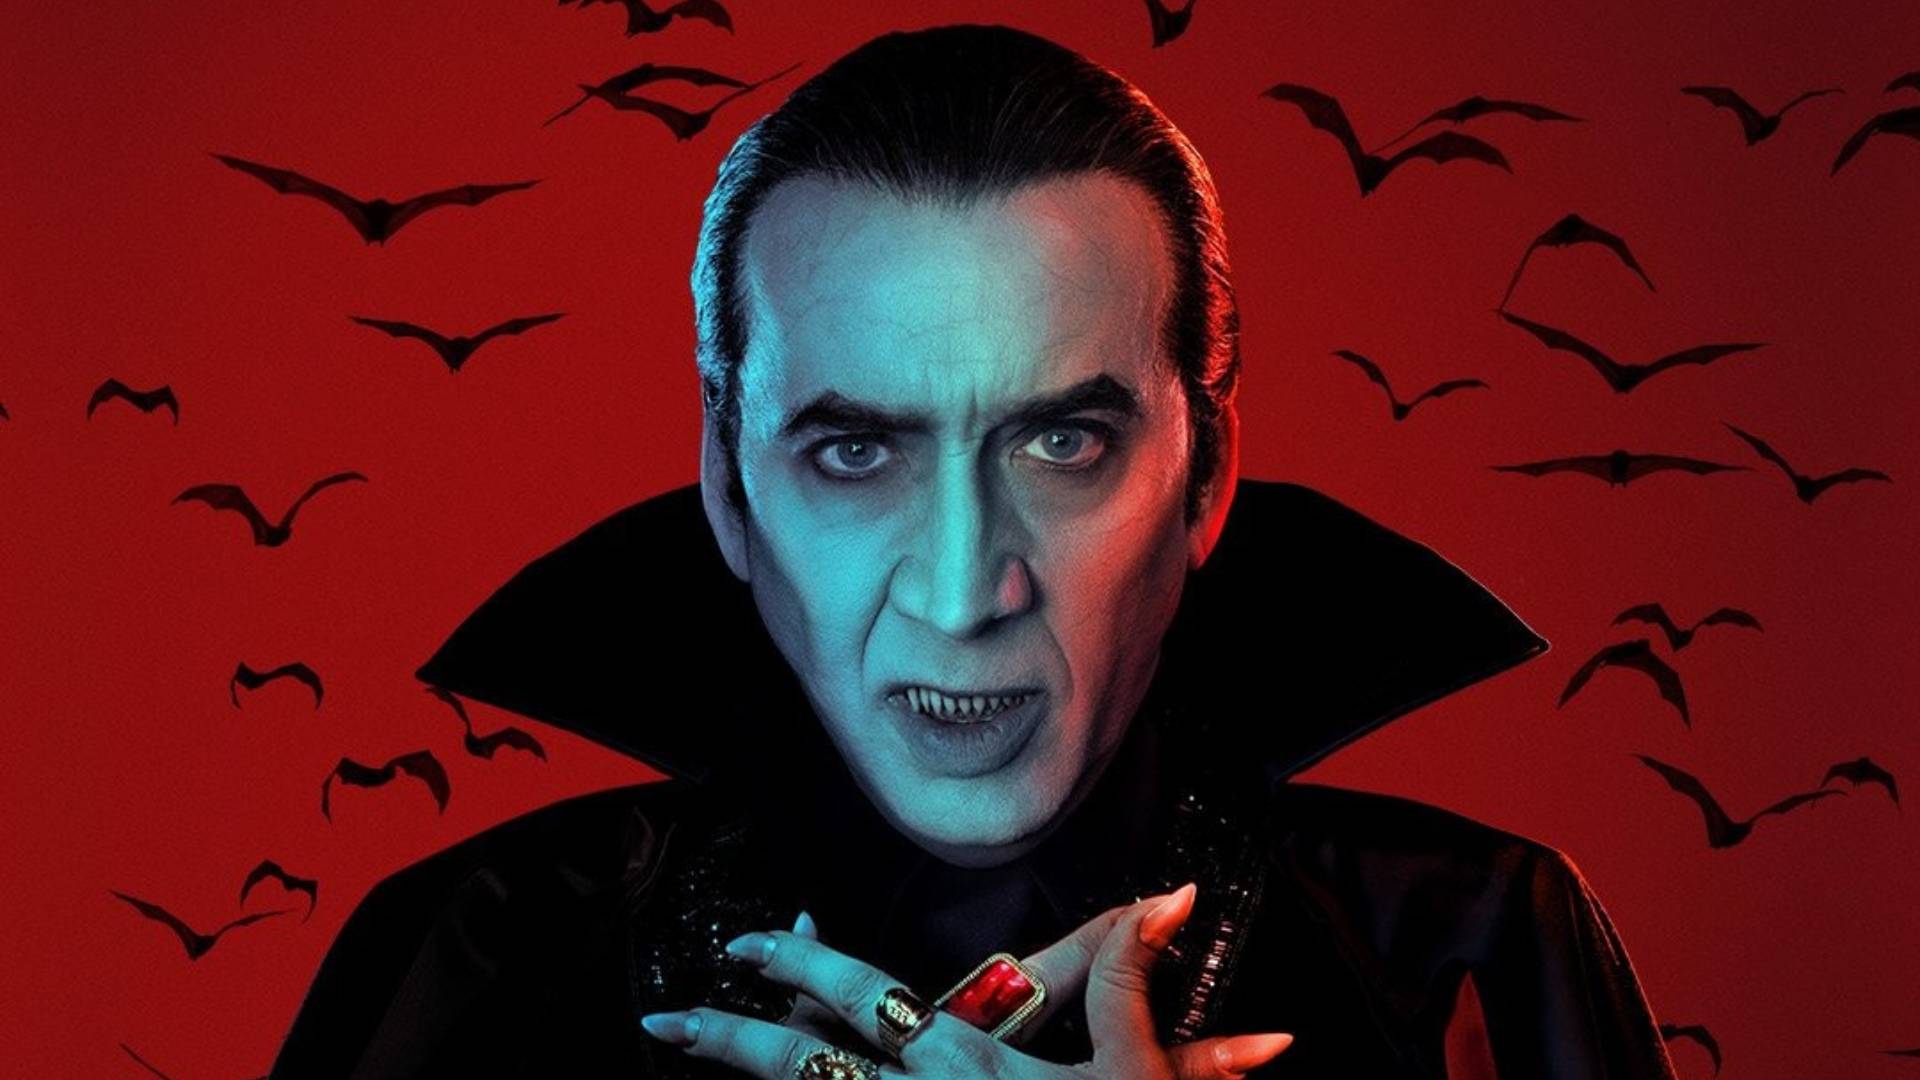 Nicolas Cage en el papel de Drácula en película Renfield